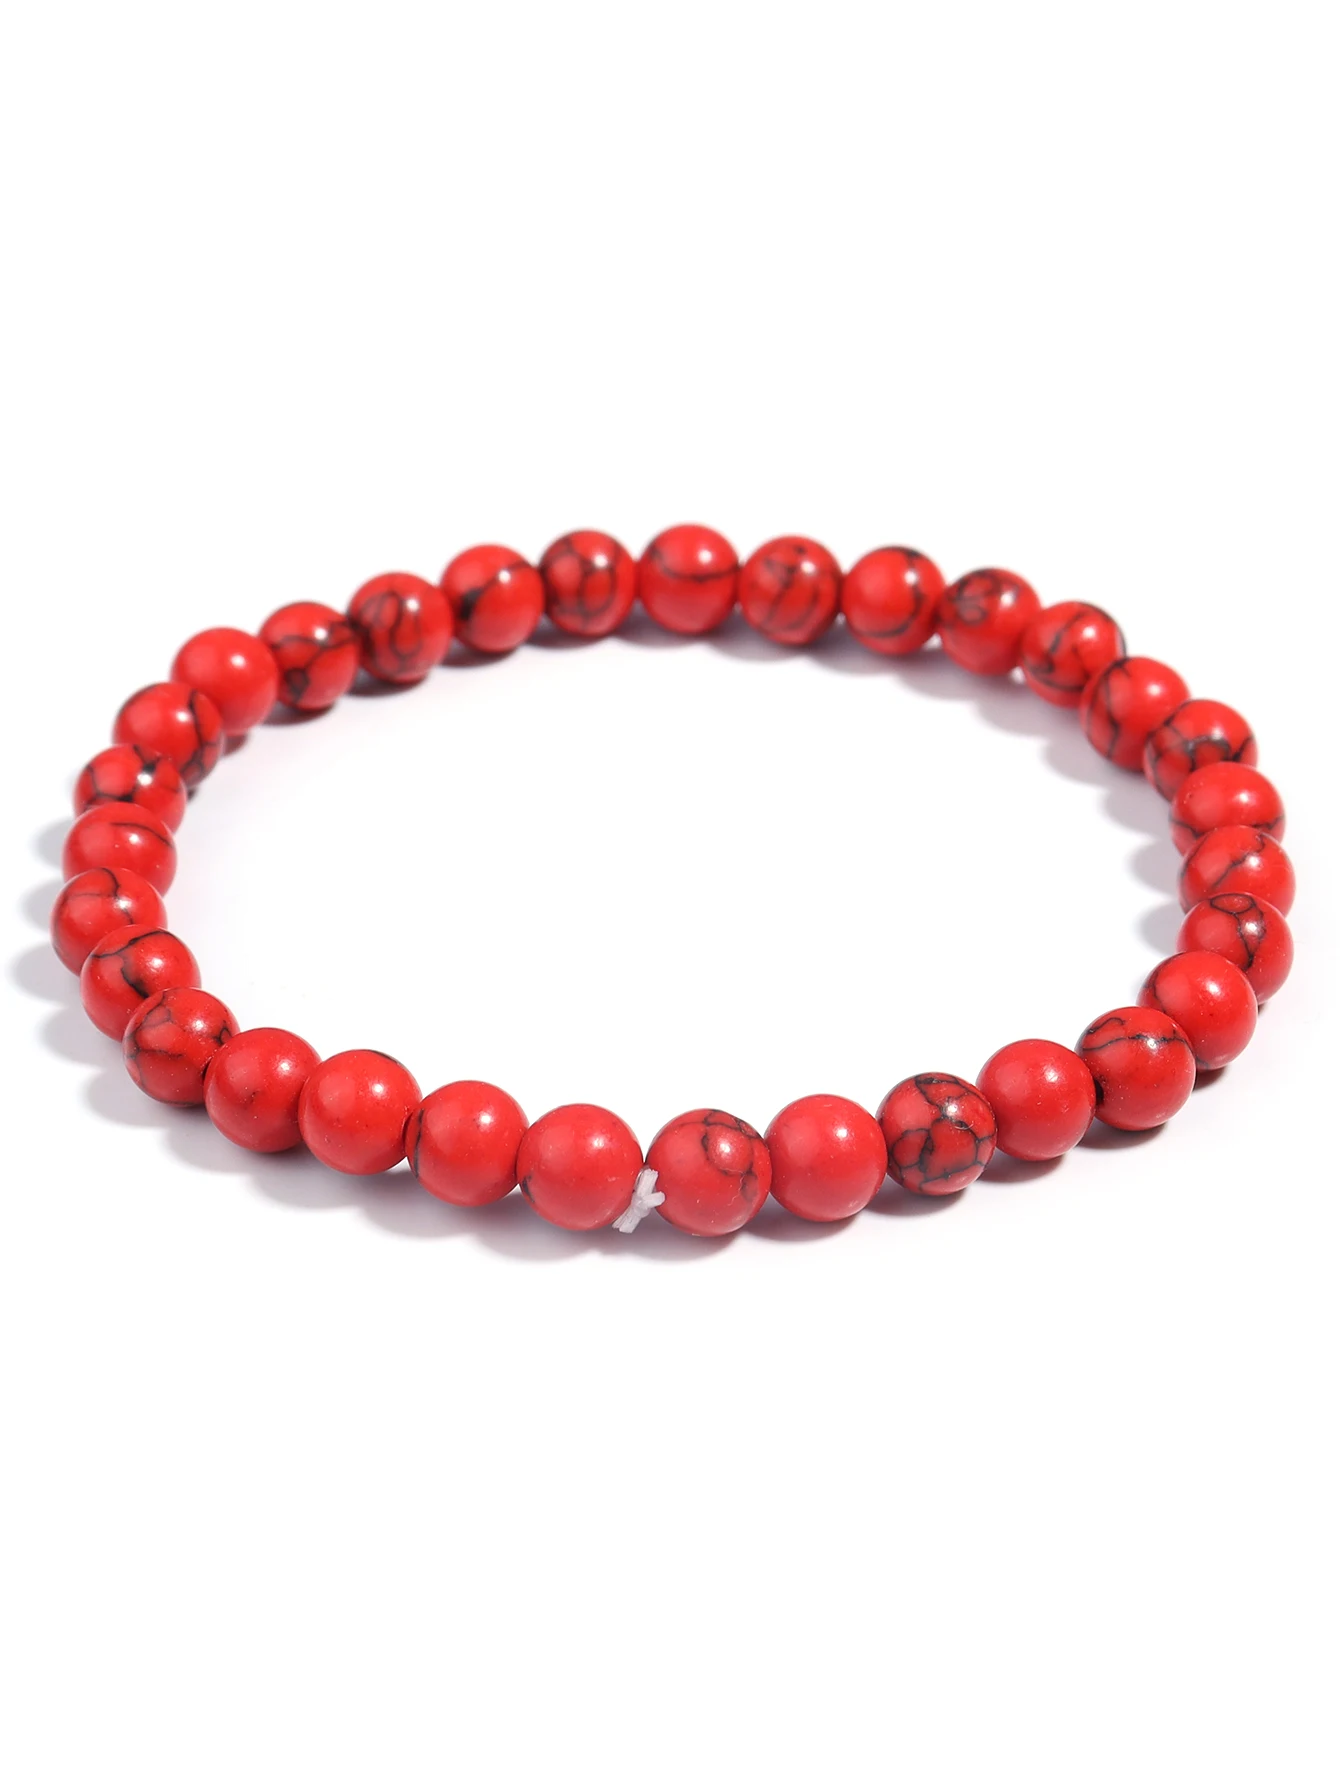 OAIITE-pulsera de jaspe rojo para hombre y mujer, brazalete con cuentas de piedra Natural, meditación, Yoga, oración, Reiki, joyería de pulso